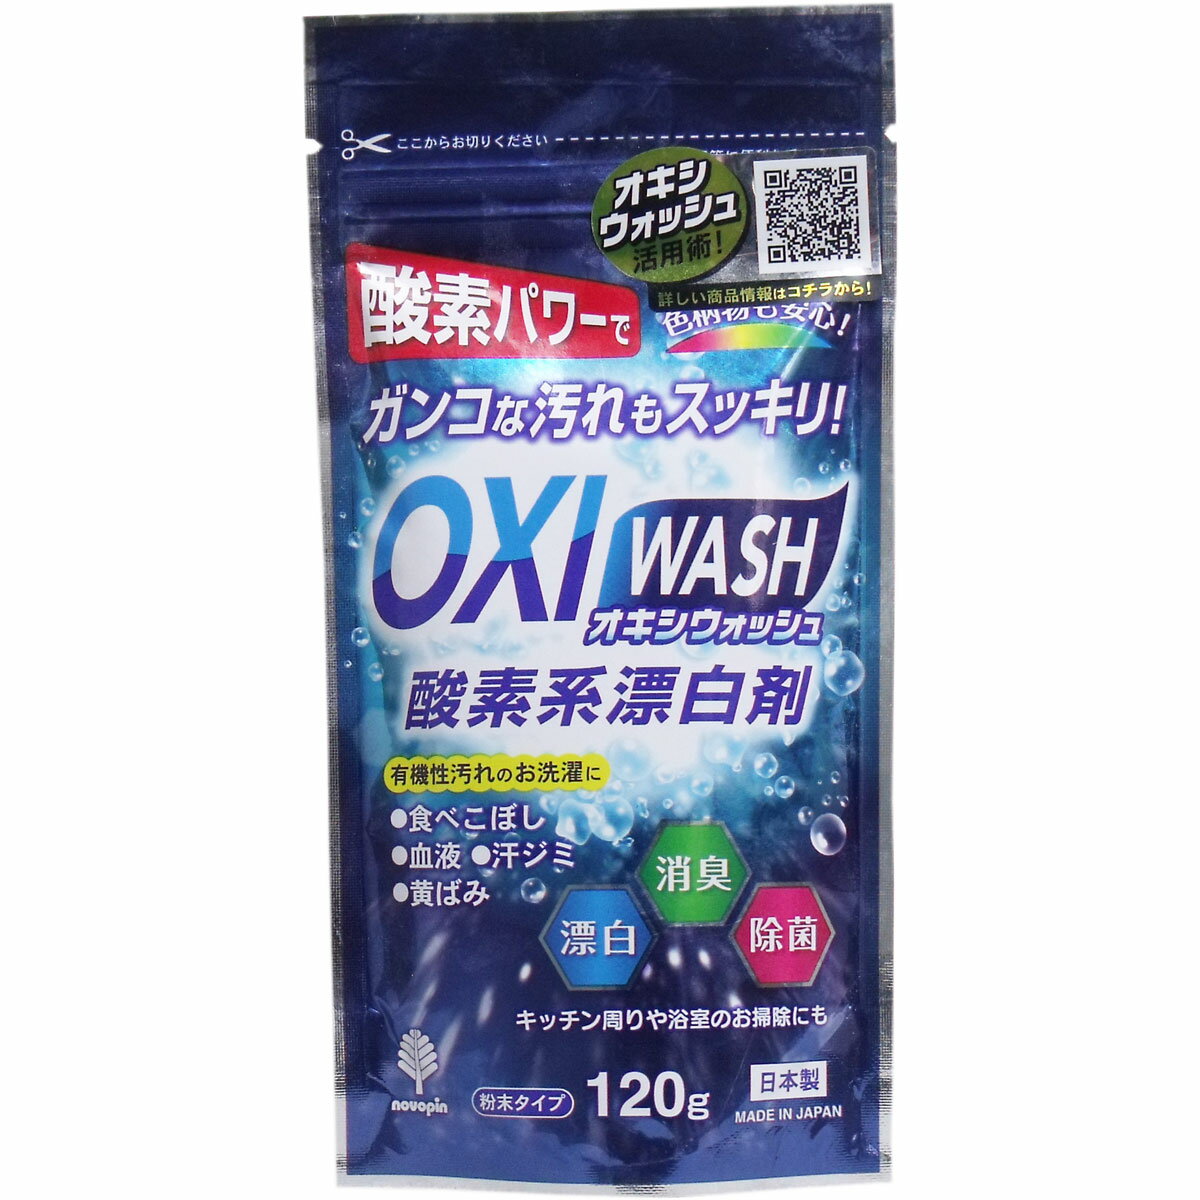 【大感謝価格】オキシウォッシュ 酸素系漂白剤 粉末タイプ 120g×10個セット【返品キャンセル不可】